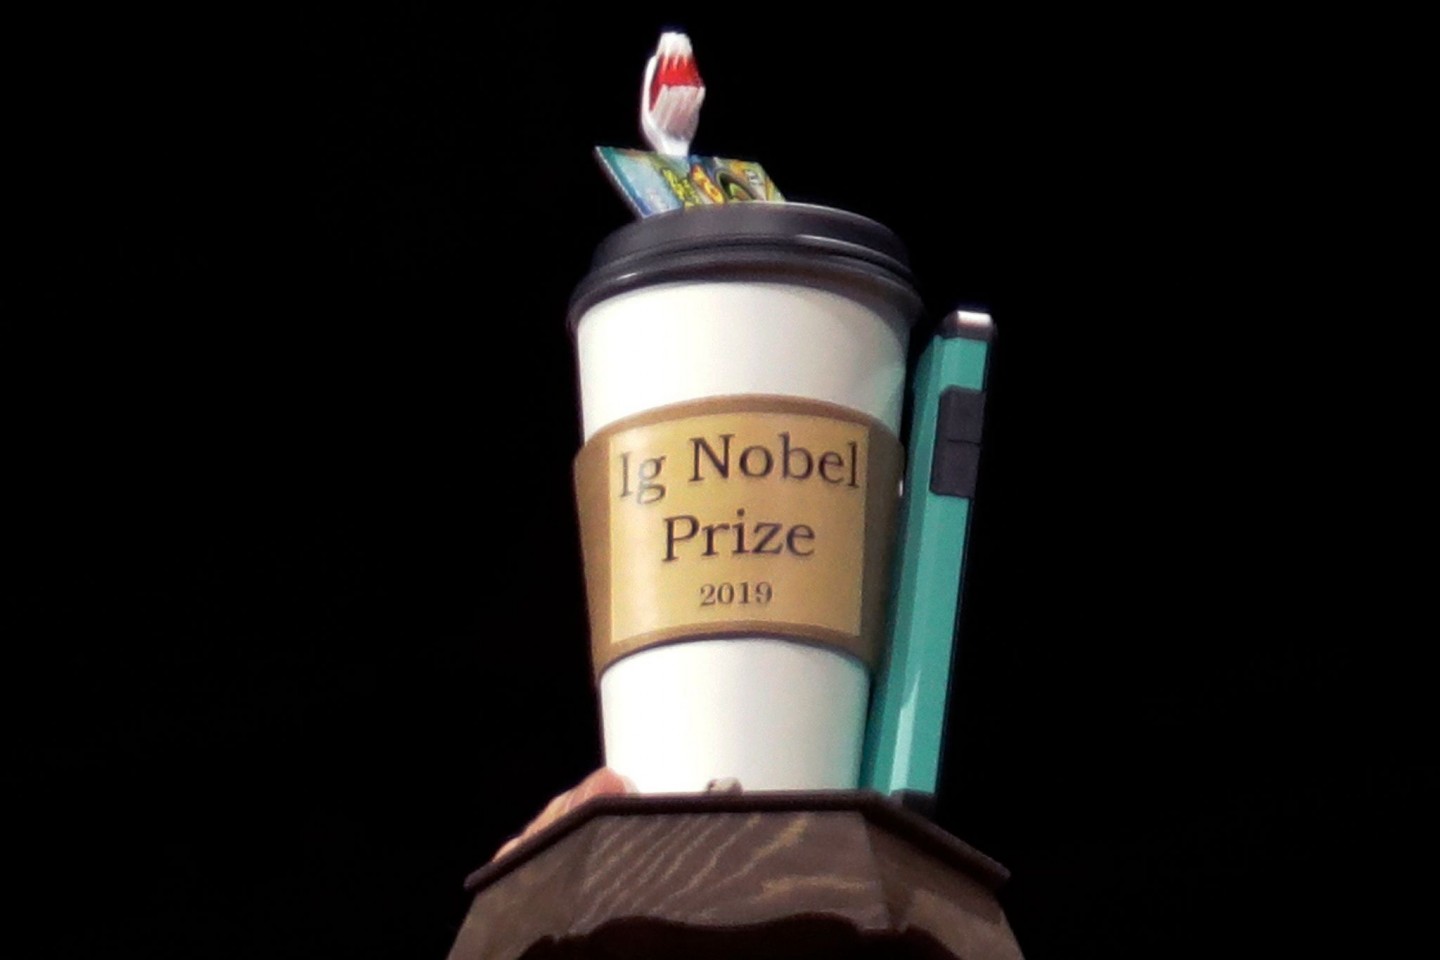 Archivfoto von einem Ig-Nobelpreis aus dem Jahr 2019.